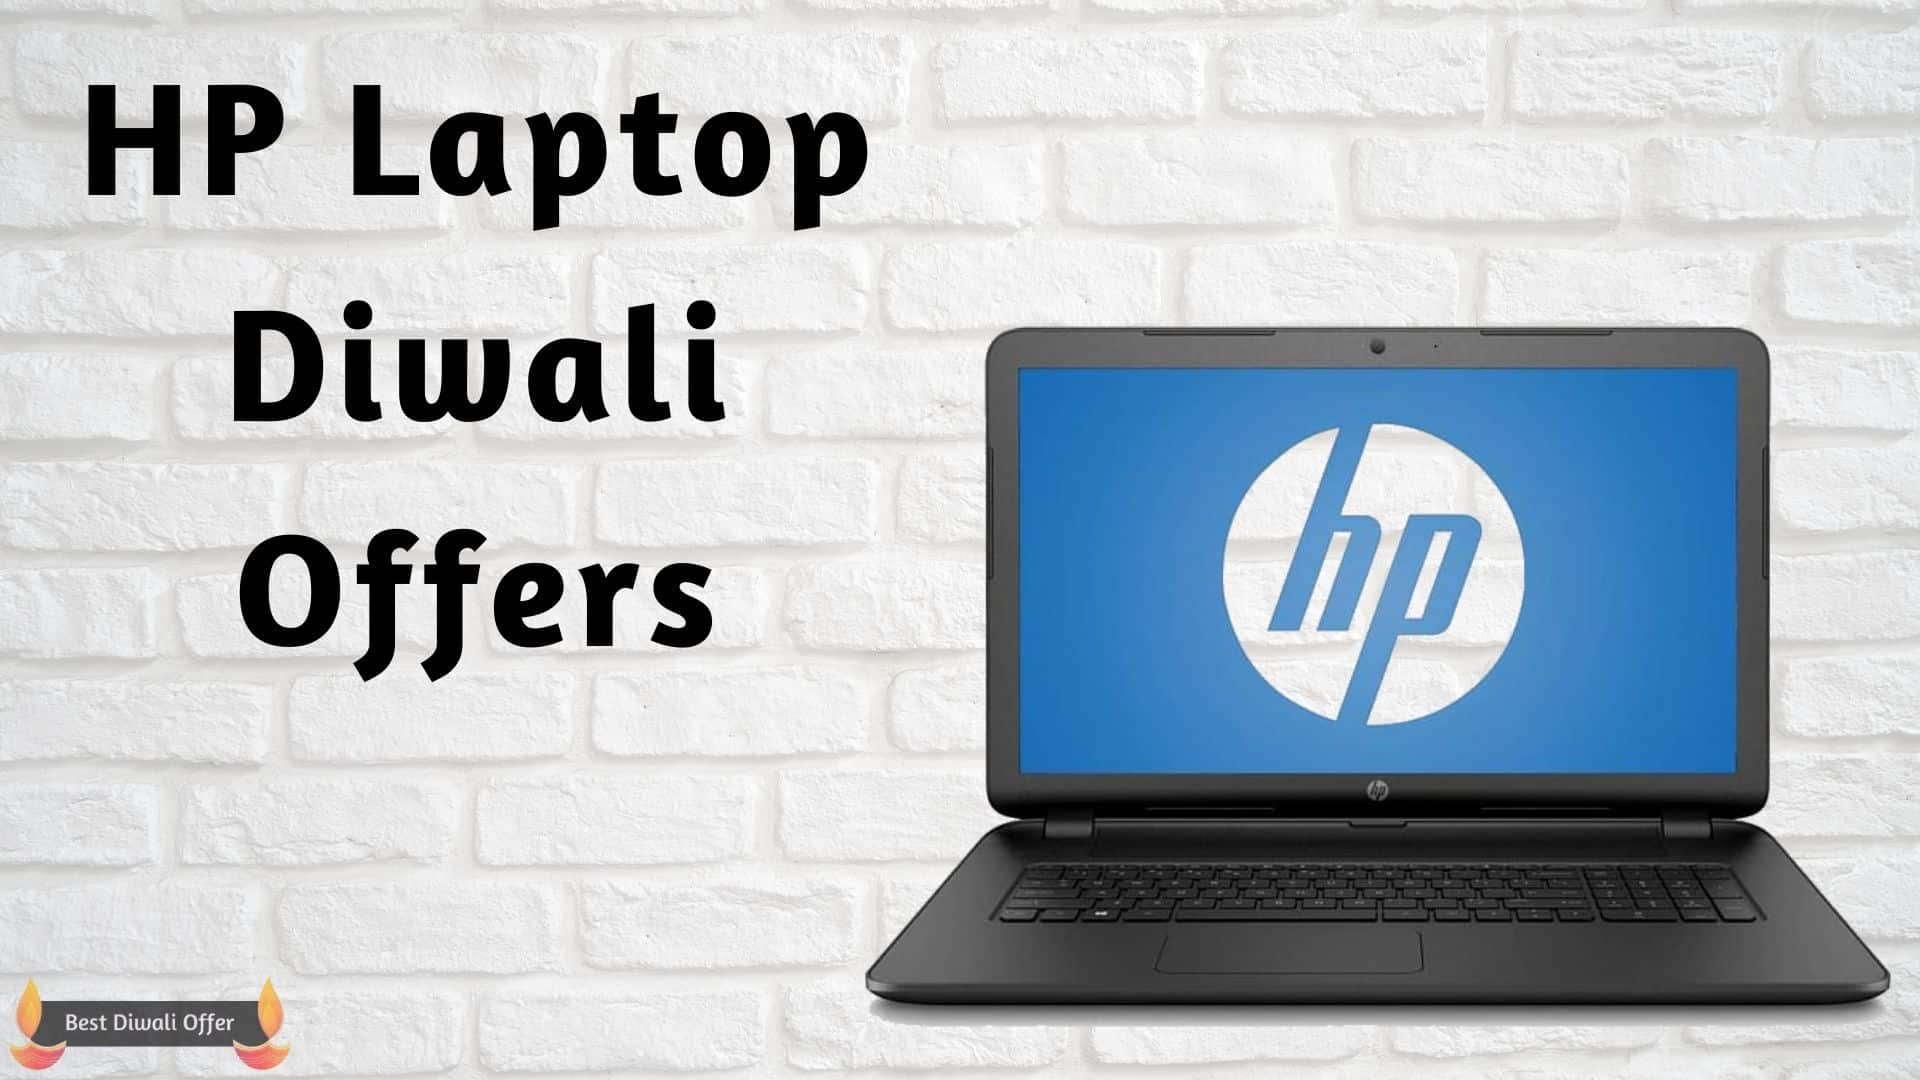 HP Laptop Diwali Offers